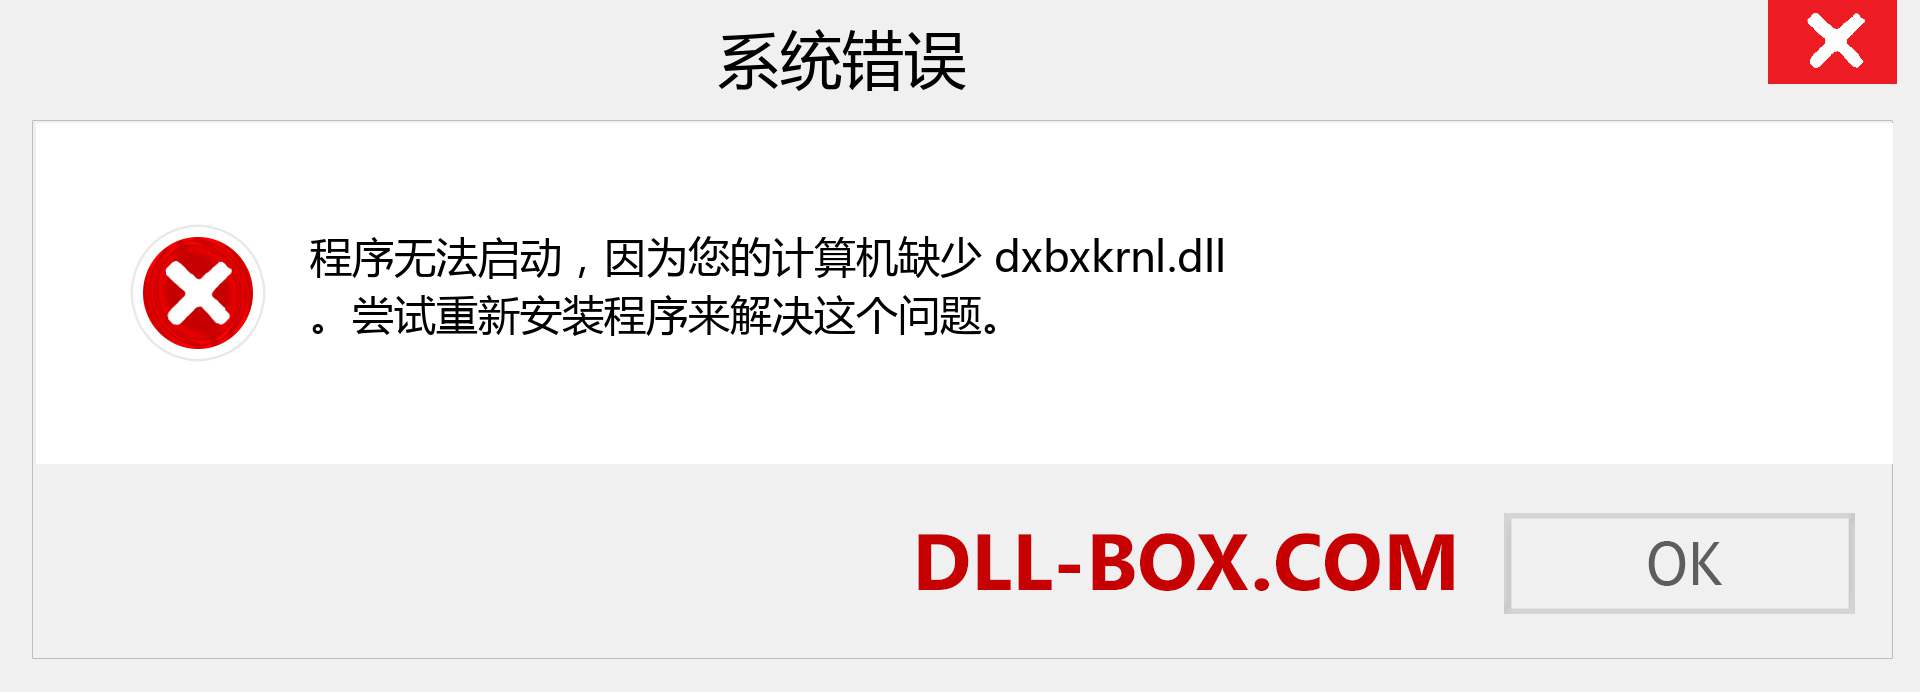 dxbxkrnl.dll 文件丢失？。 适用于 Windows 7、8、10 的下载 - 修复 Windows、照片、图像上的 dxbxkrnl dll 丢失错误